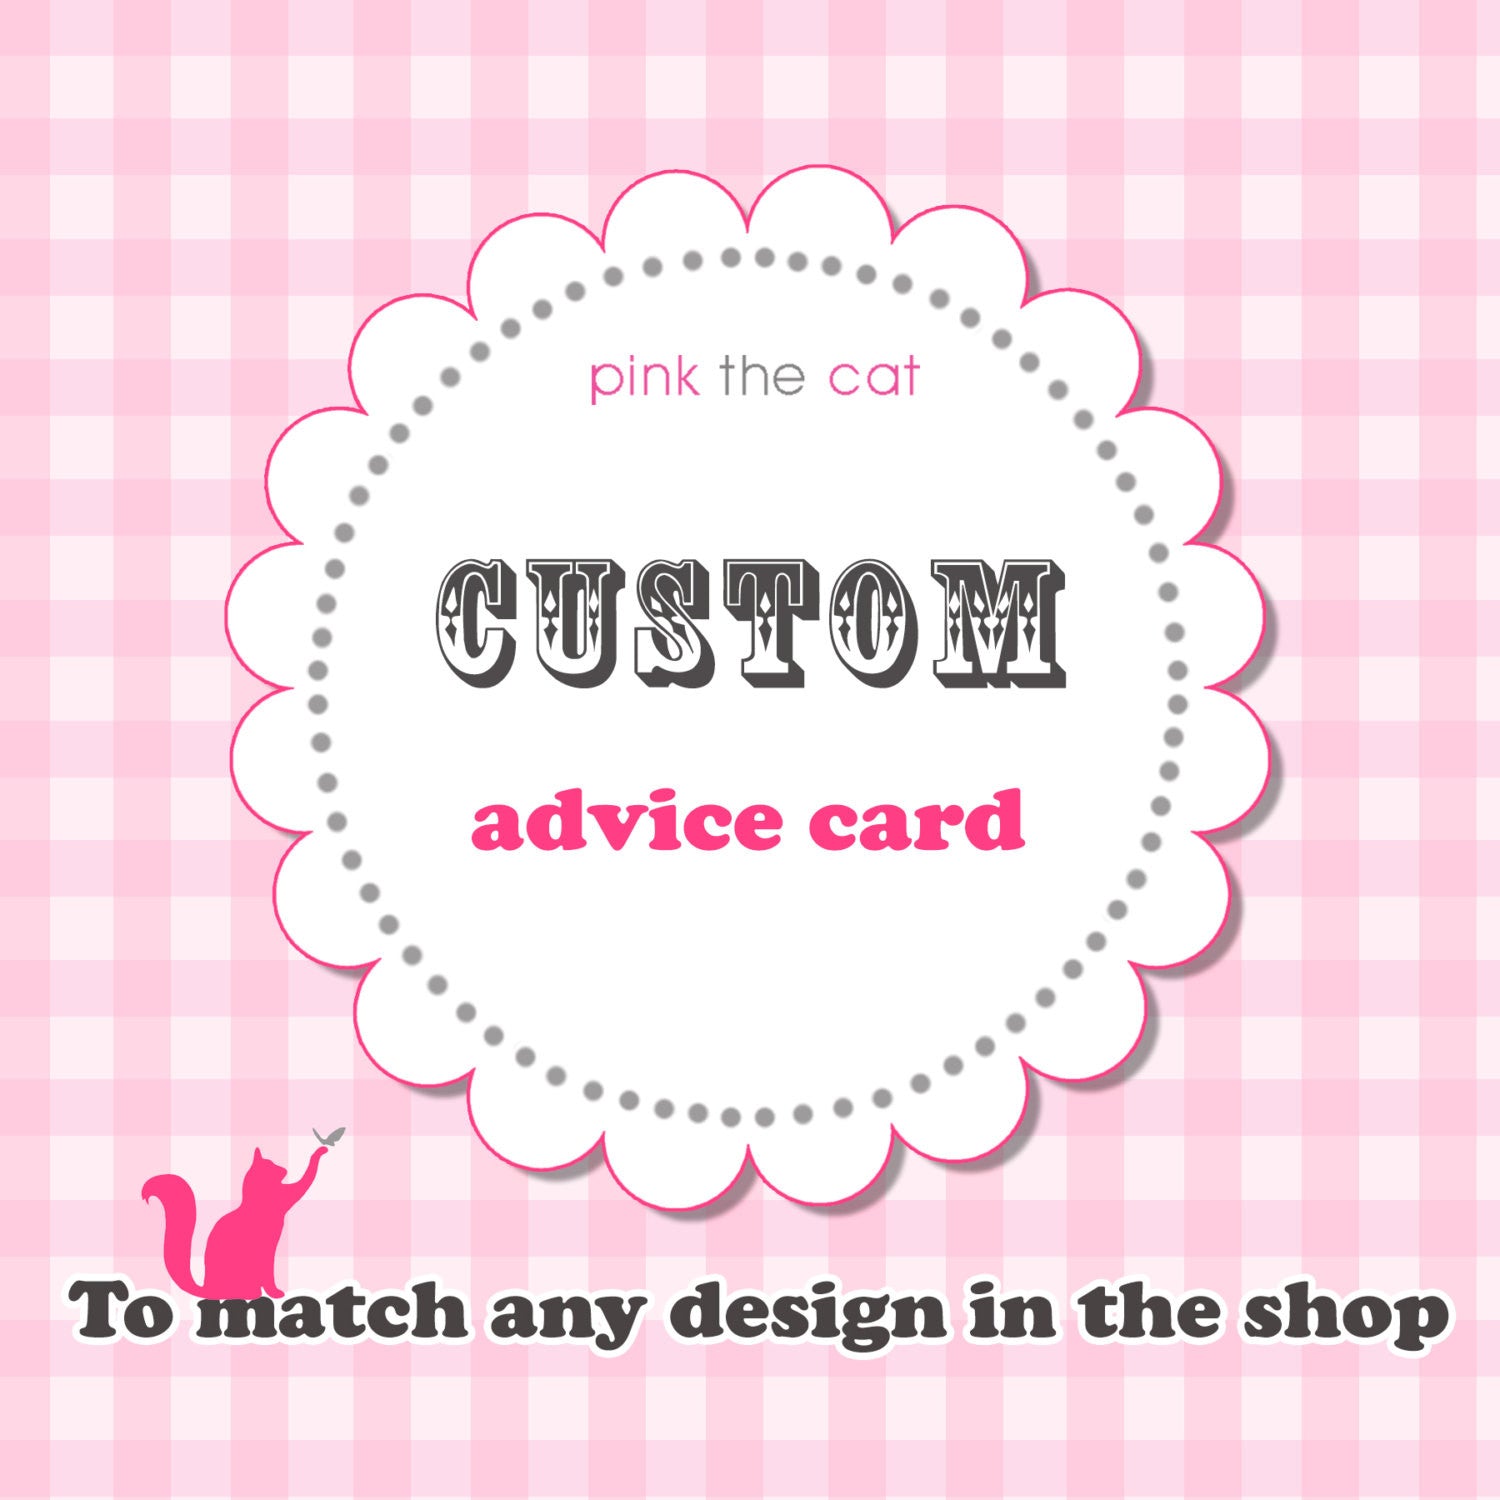 advice card